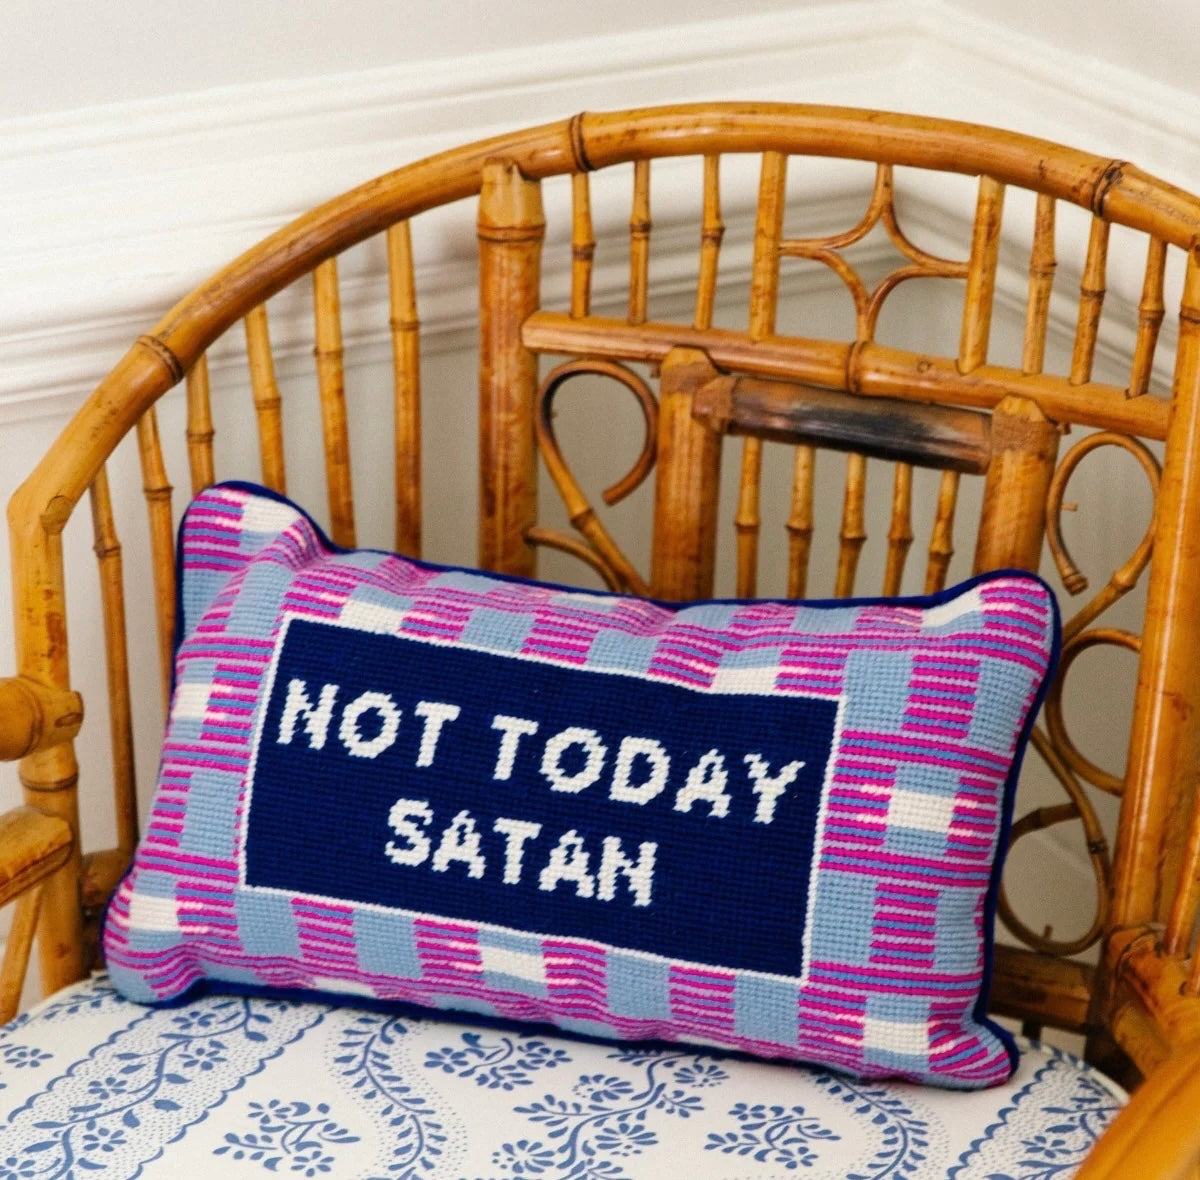 Furbish: Not Today Satan Needlepoint Pillow